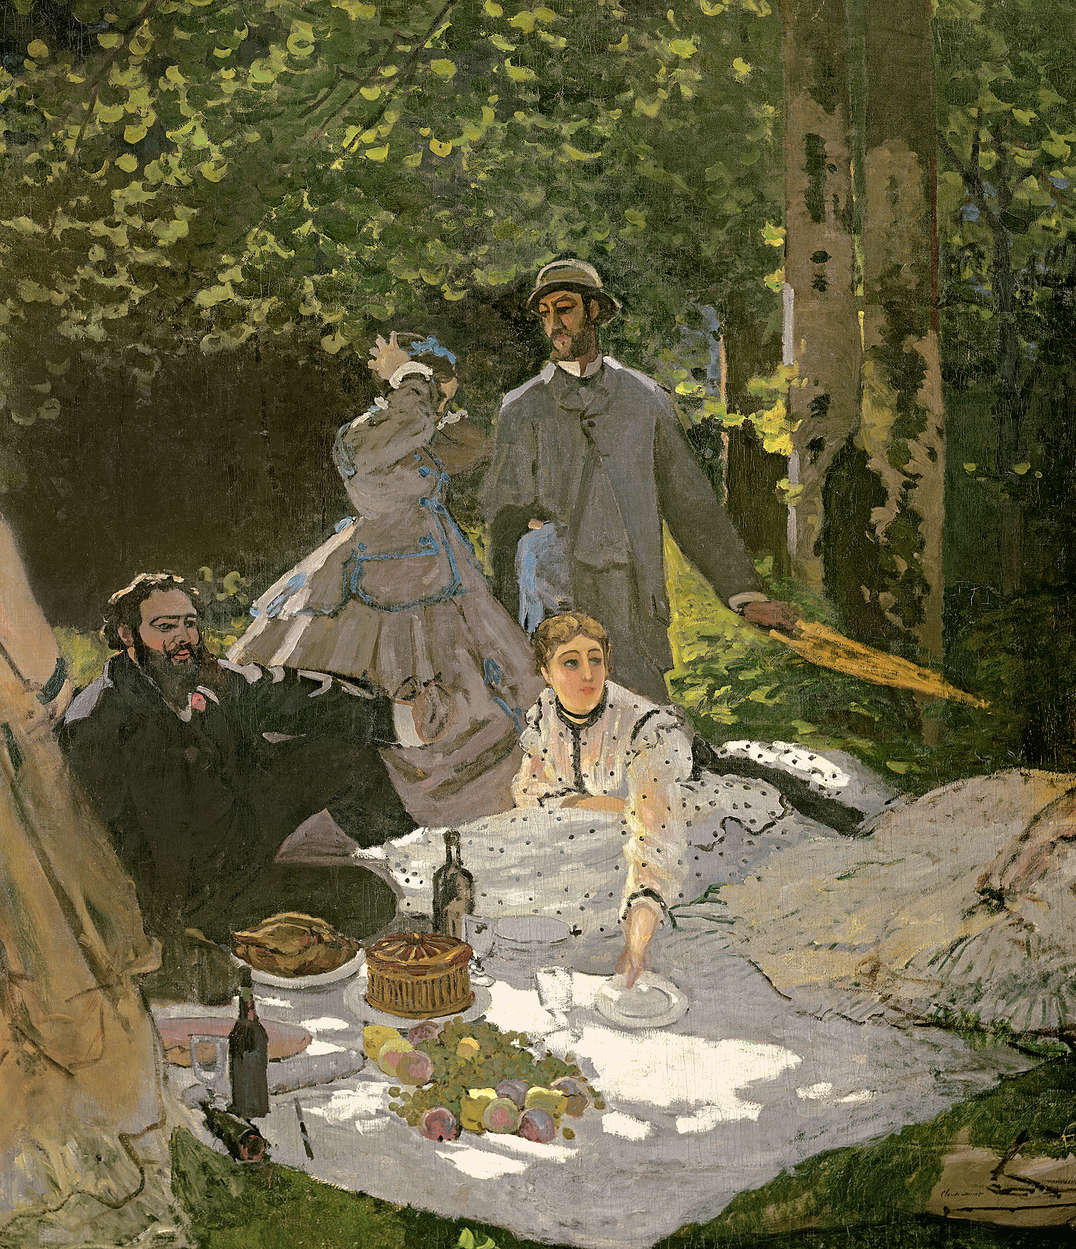             Fotomurali "Sentiero nel giardino di Monet a Giverny" di Claude Monet
        